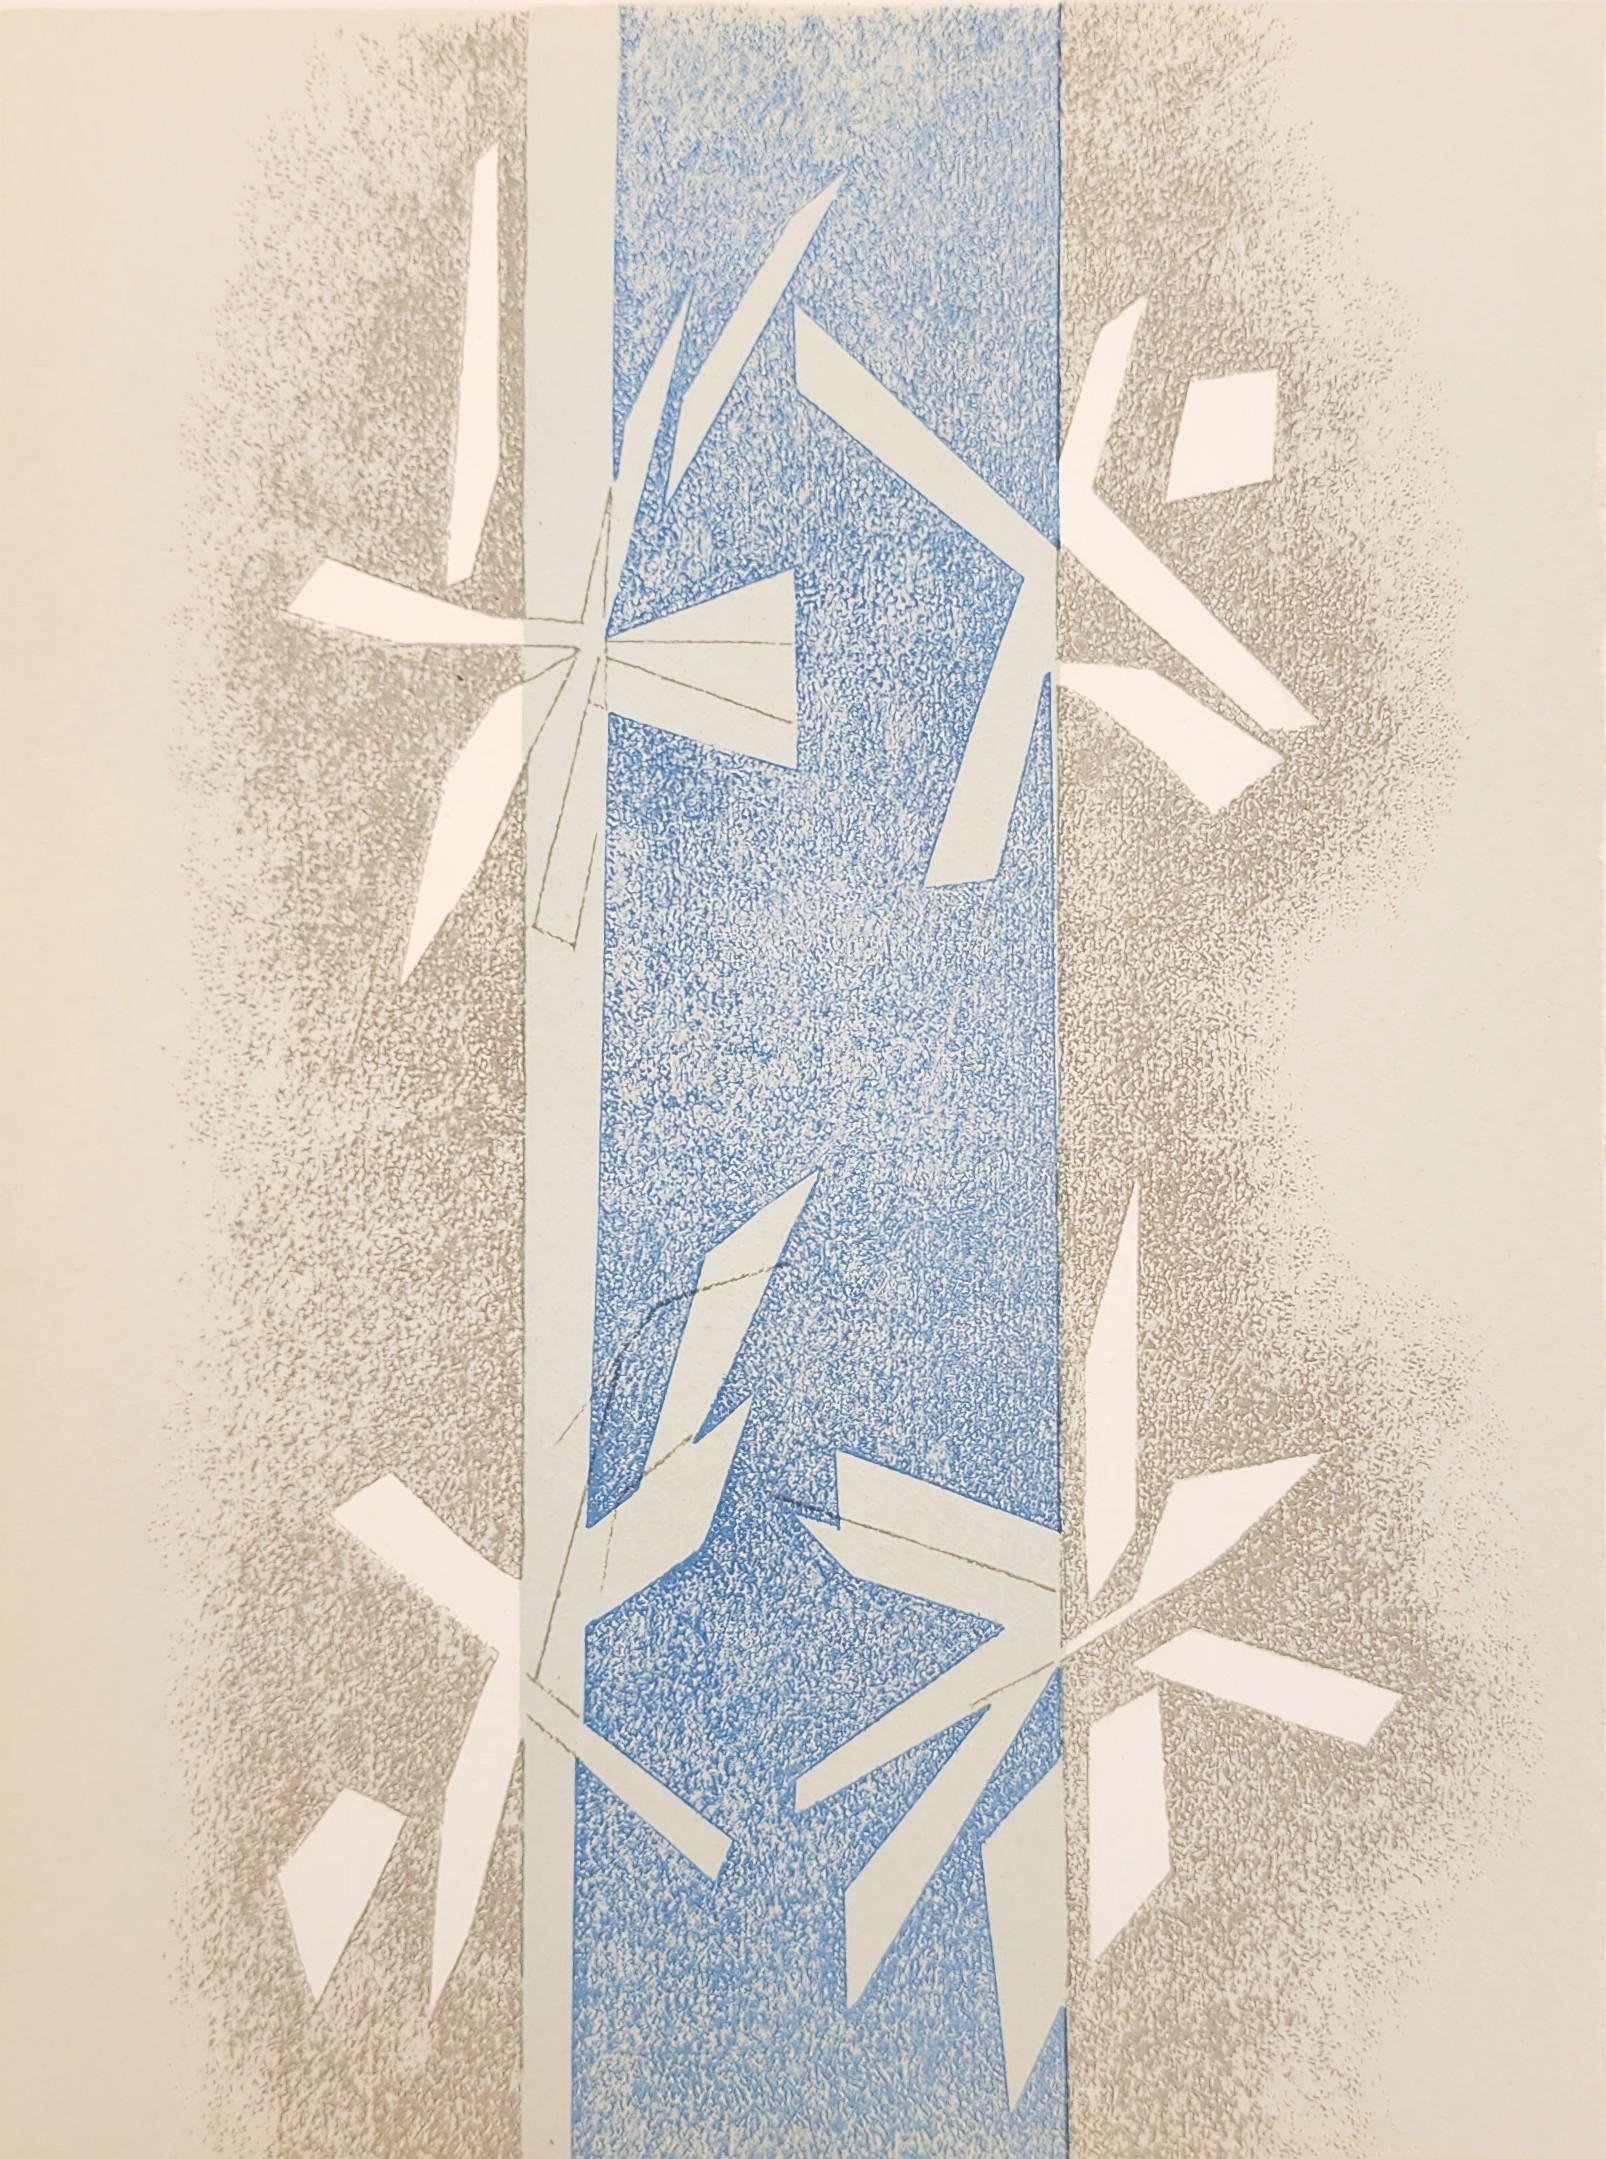 Andre Baudin Abstract Print – Zusammensetzung